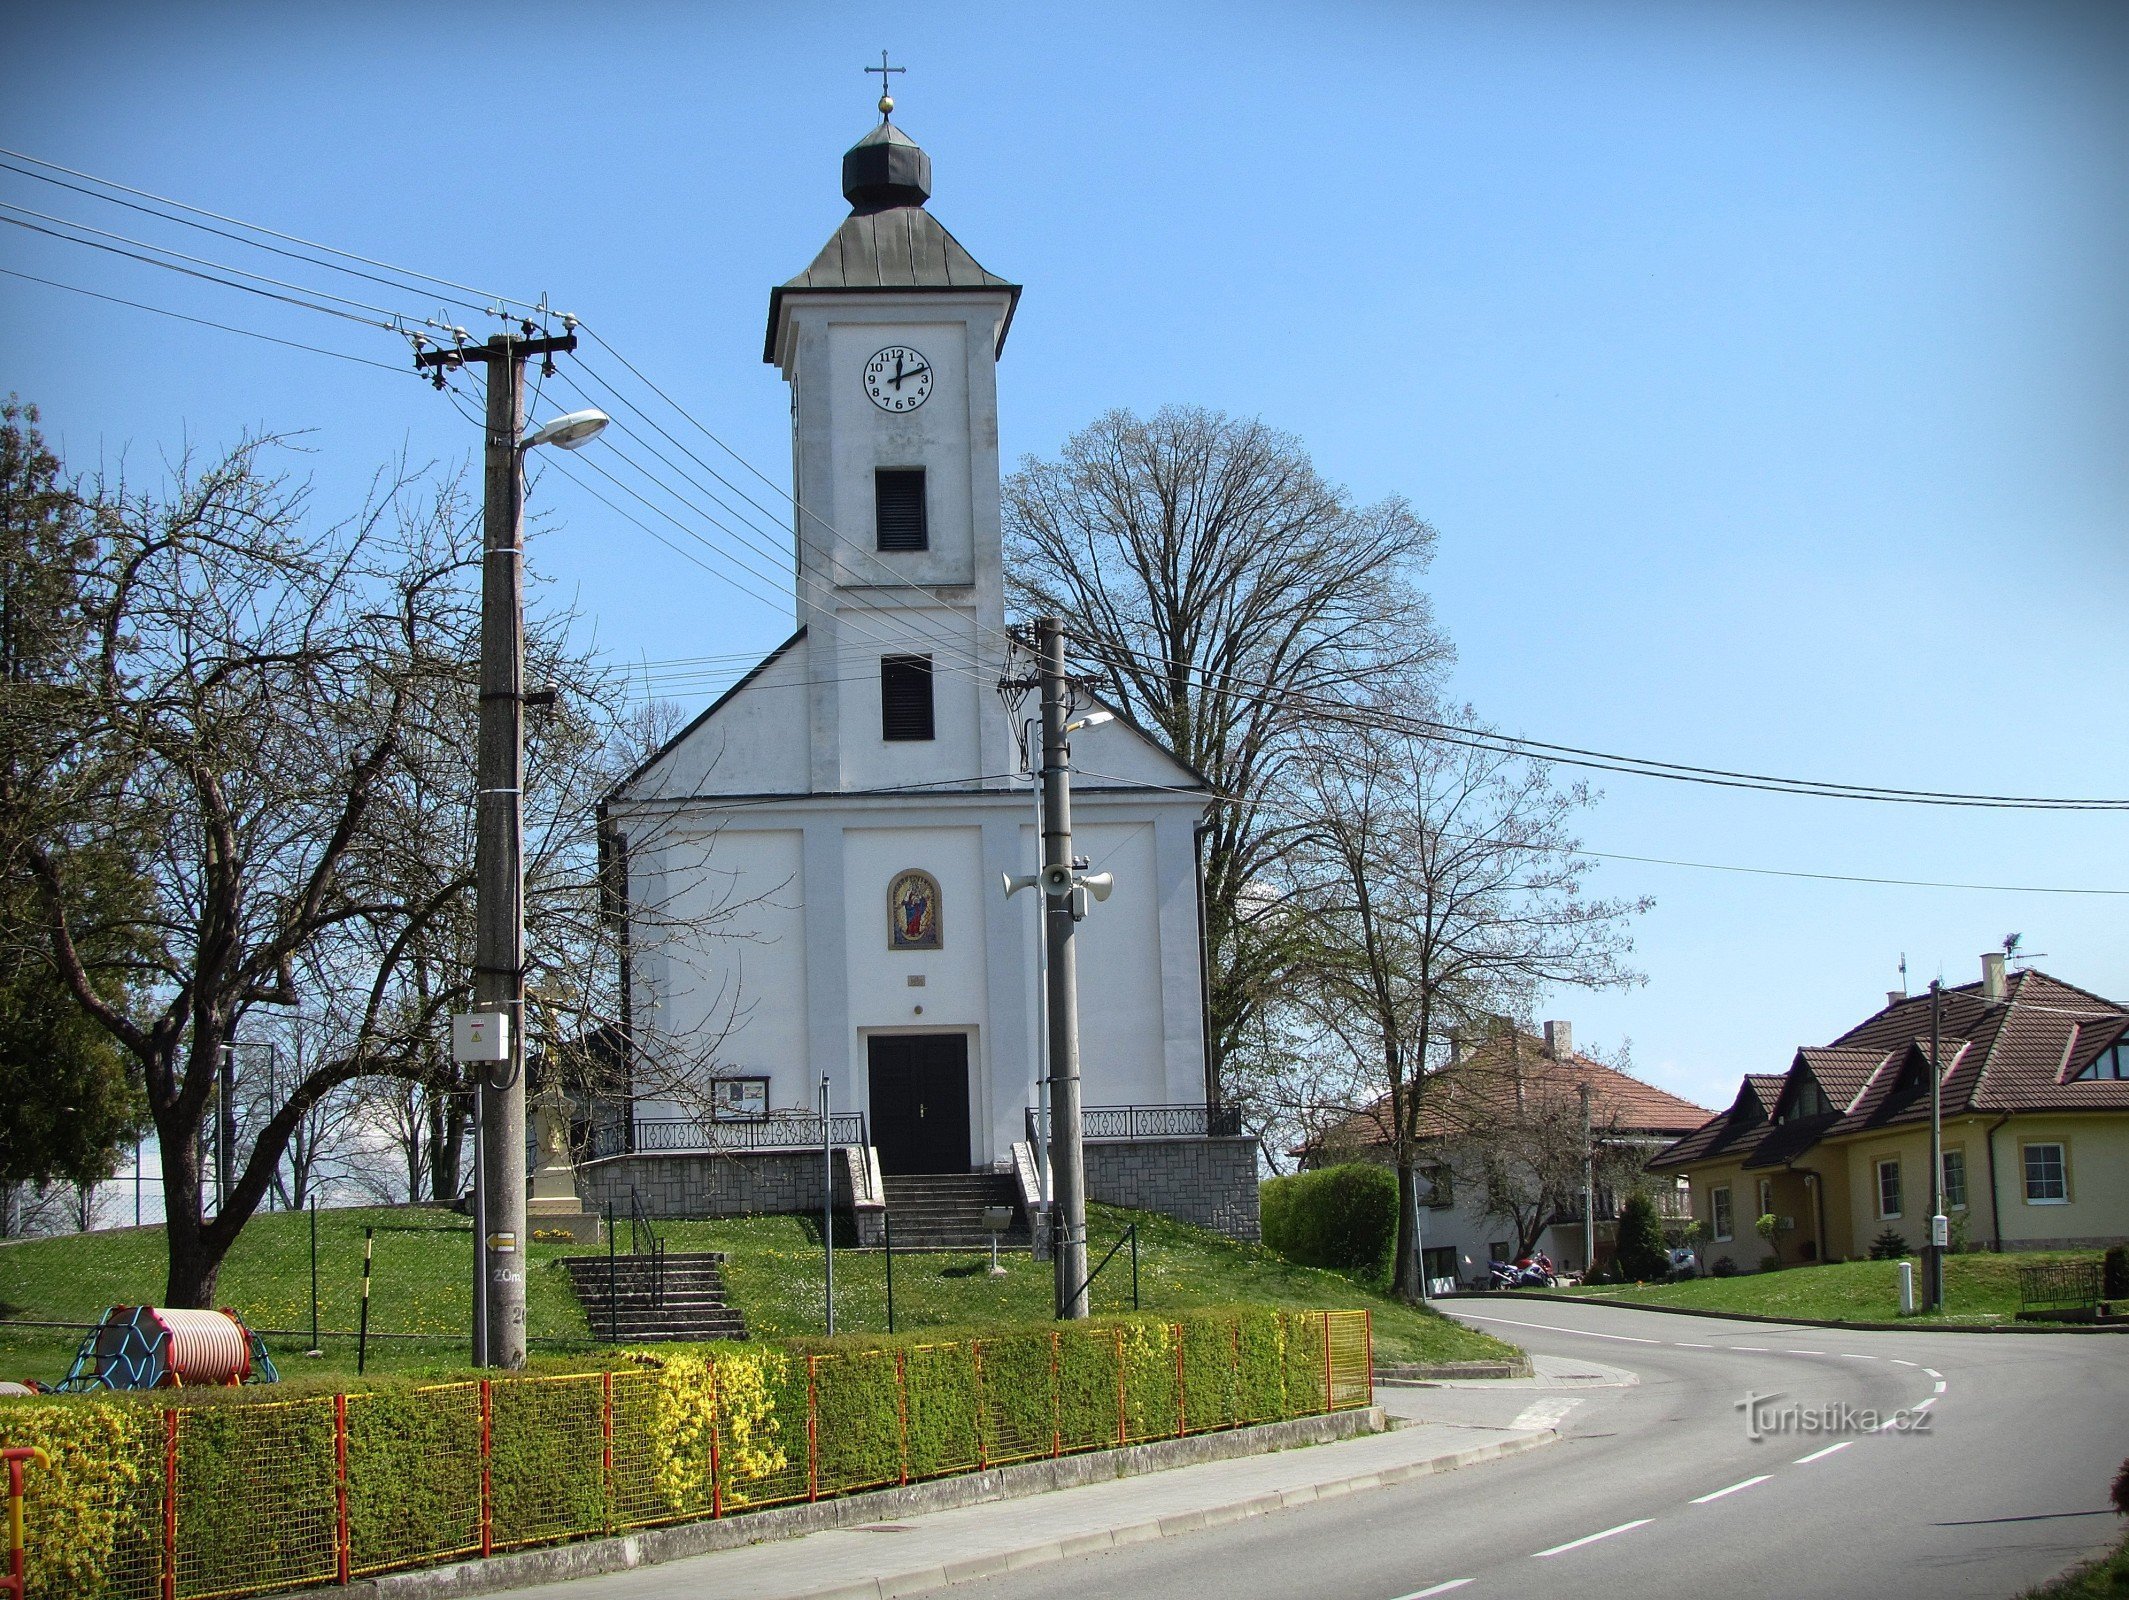 Slopné - crkva sv. Roka